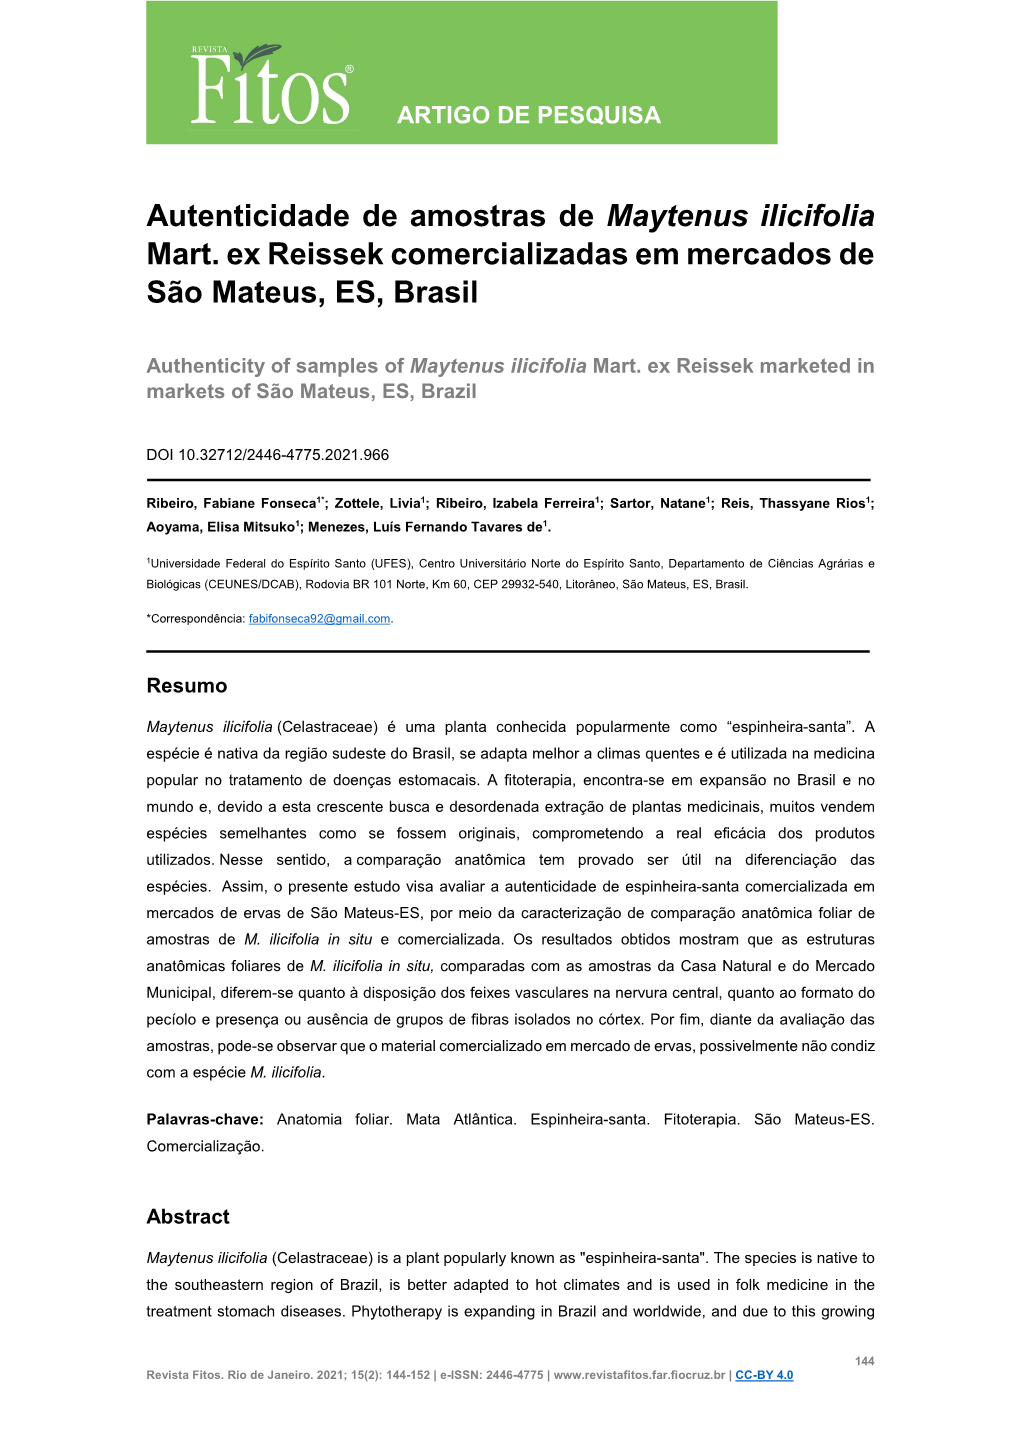 Autenticidade De Amostras De Maytenus Ilicifolia Mart. Ex Reissek Comercializadas Em Mercados De São Mateus, ES, Brasil